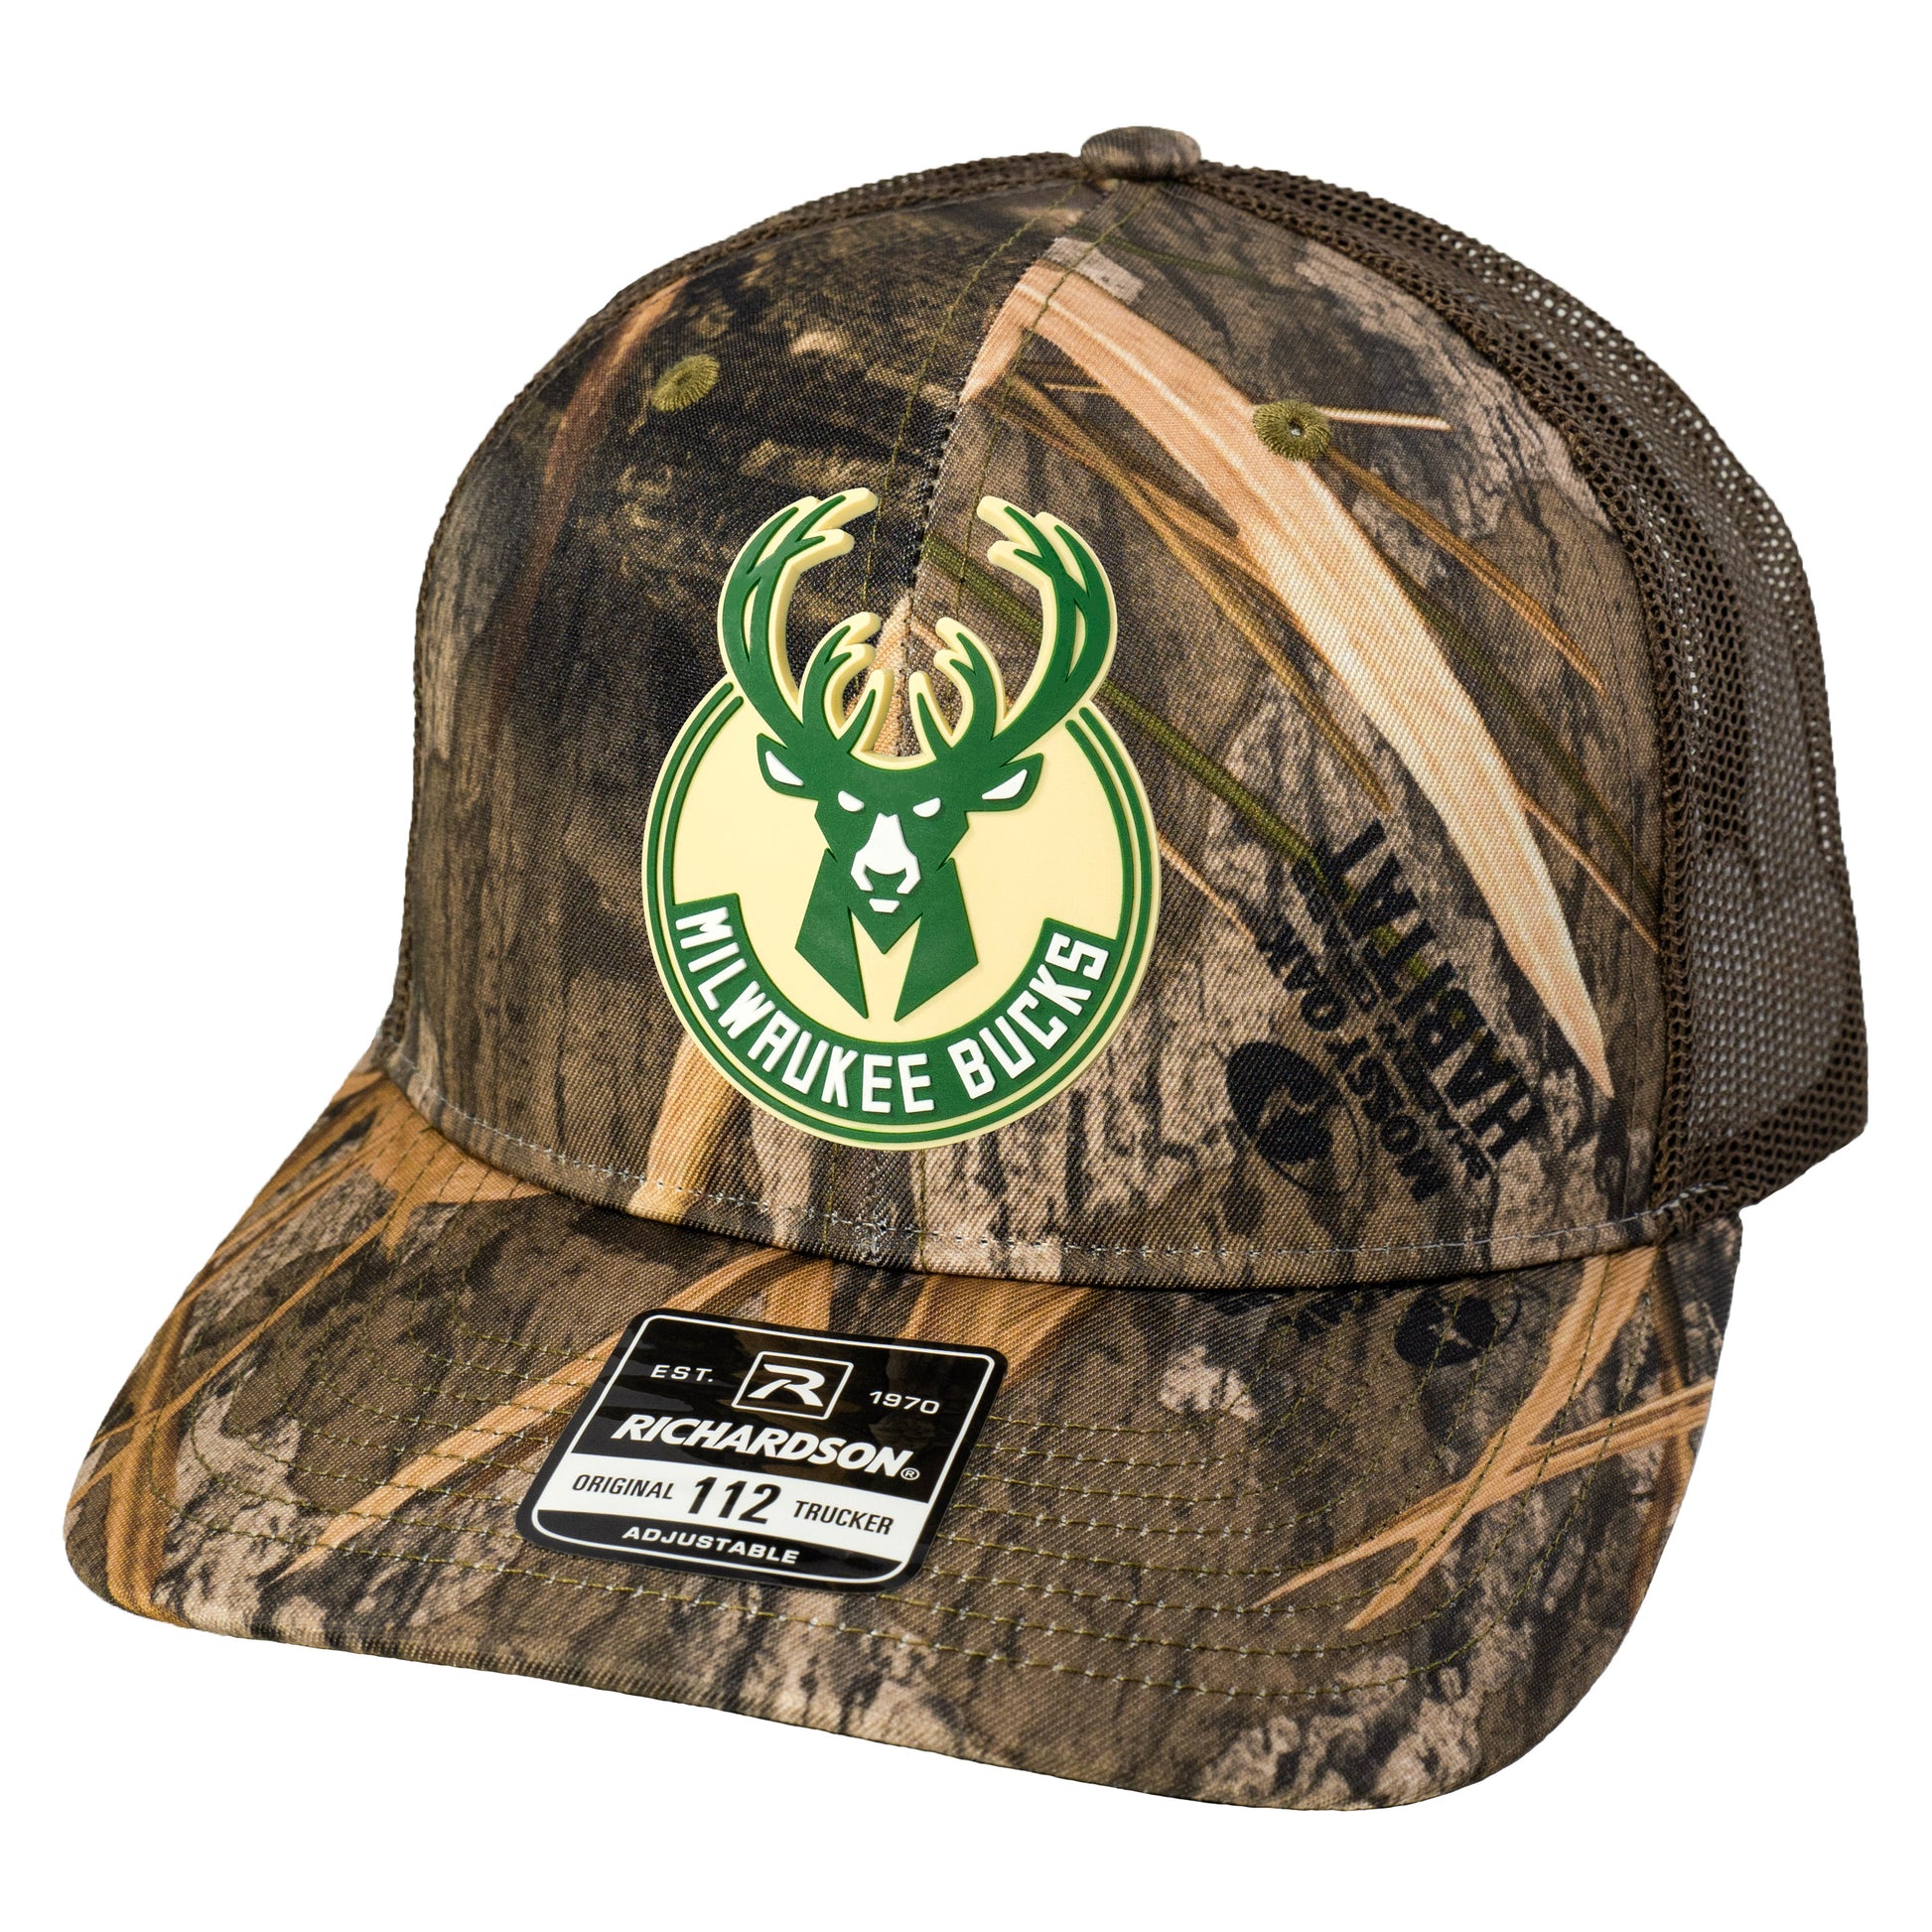 Milwaukee Bucks 3D Patterned Snapback Trucker Hat- Mossy Oak Habitat/ Brown - Ten Gallon Hat Co.